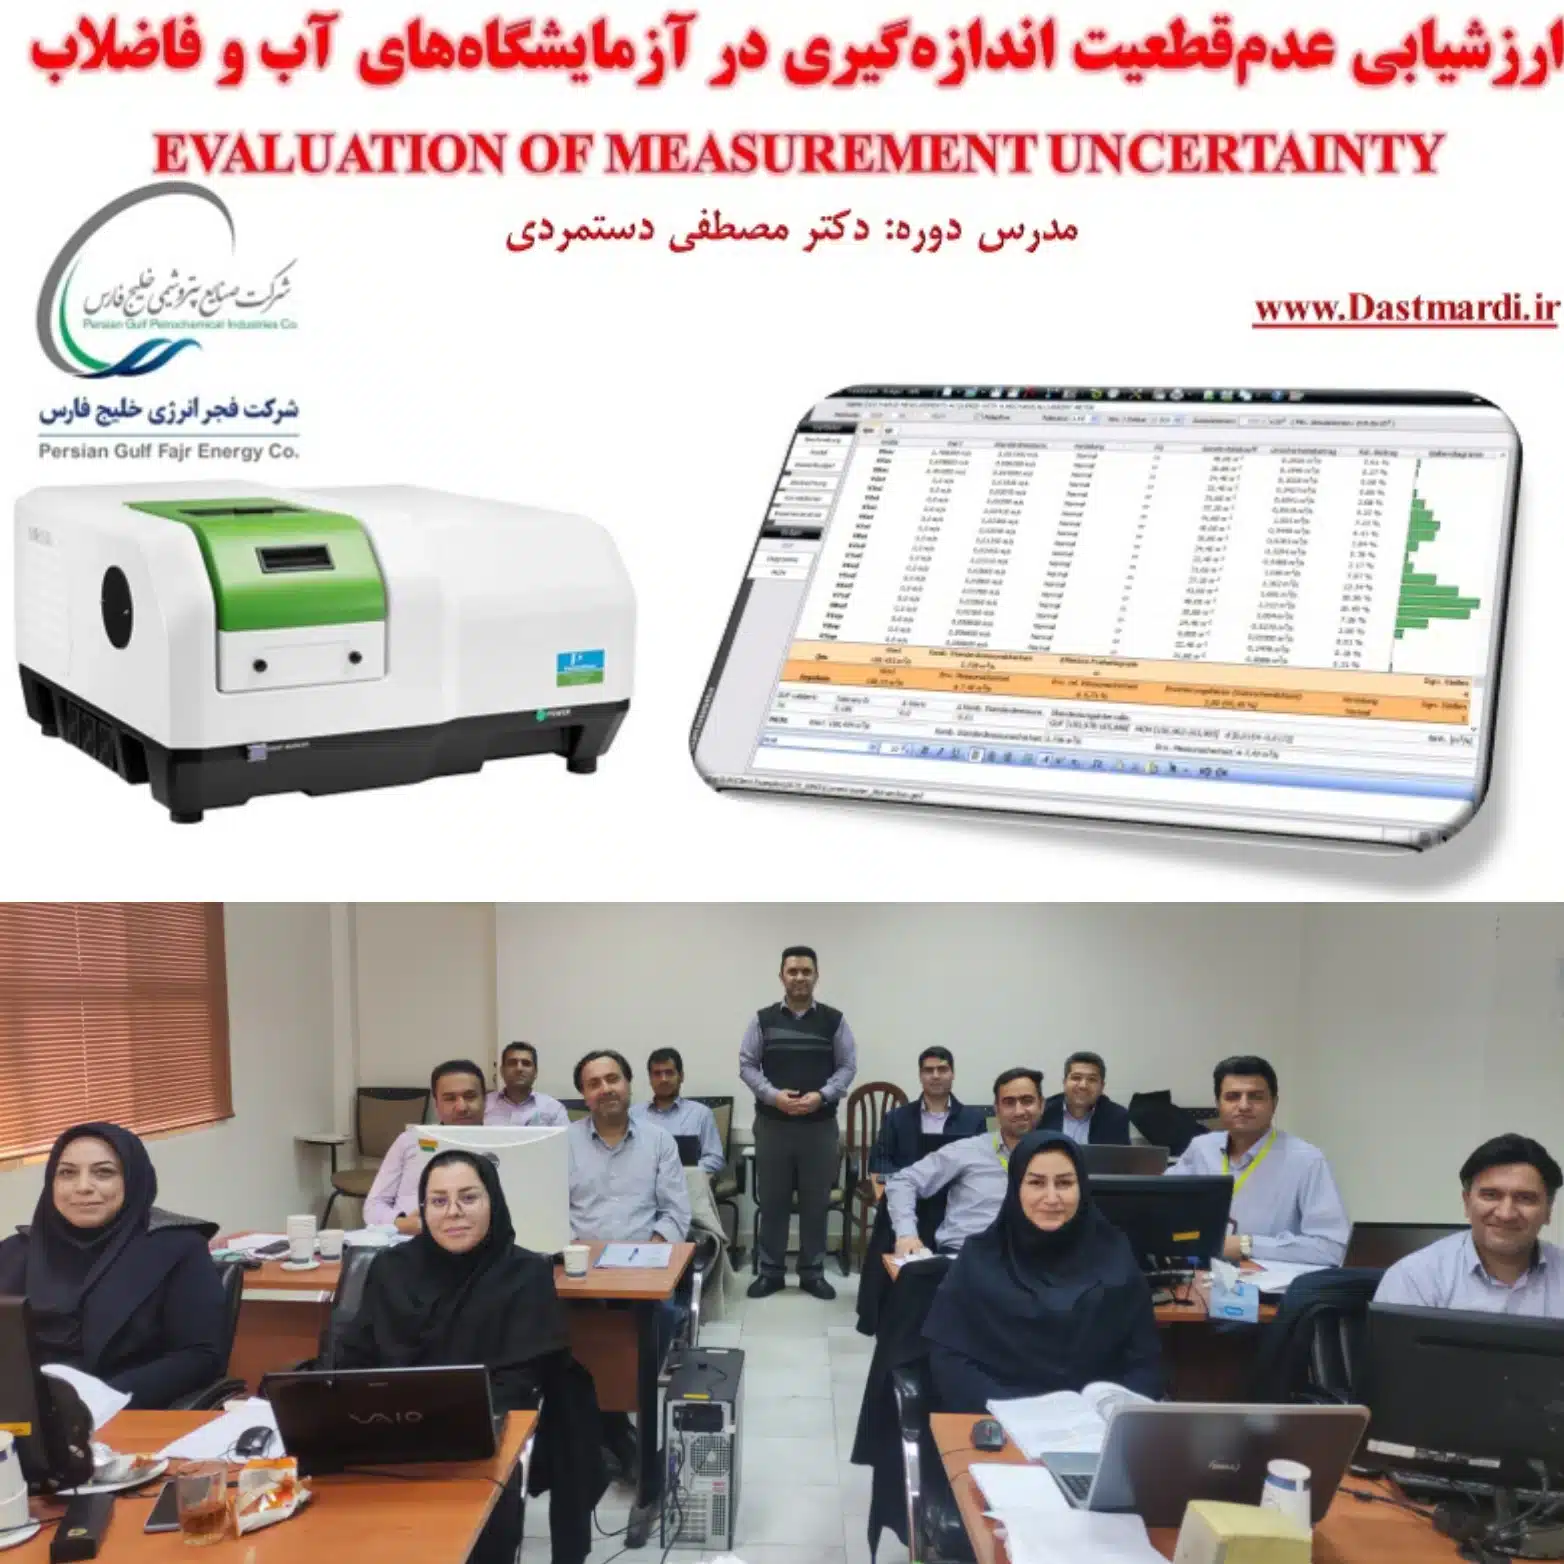 برگزاری دوره آموزش محاسبه عدم قطعیت اندازه گیری در شرکت پتروشیمی فجر انرژی خلیج فارس